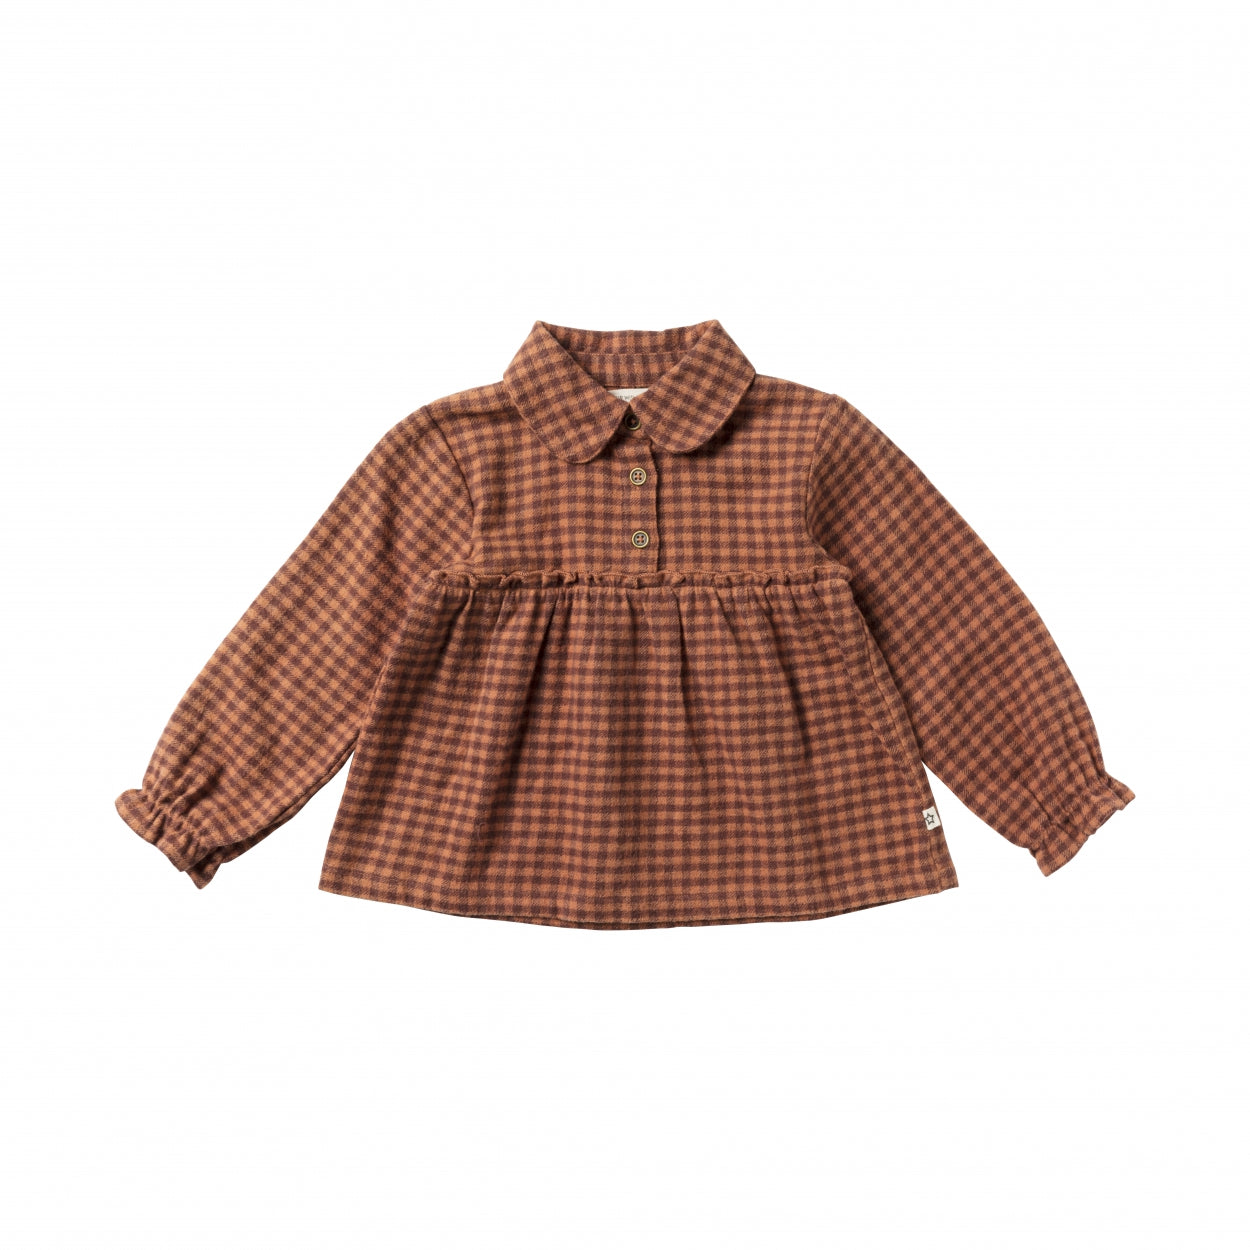 Meisjes Shirt Saxon | Merel van Your Wishes in de kleur Brown Stone in maat 98.